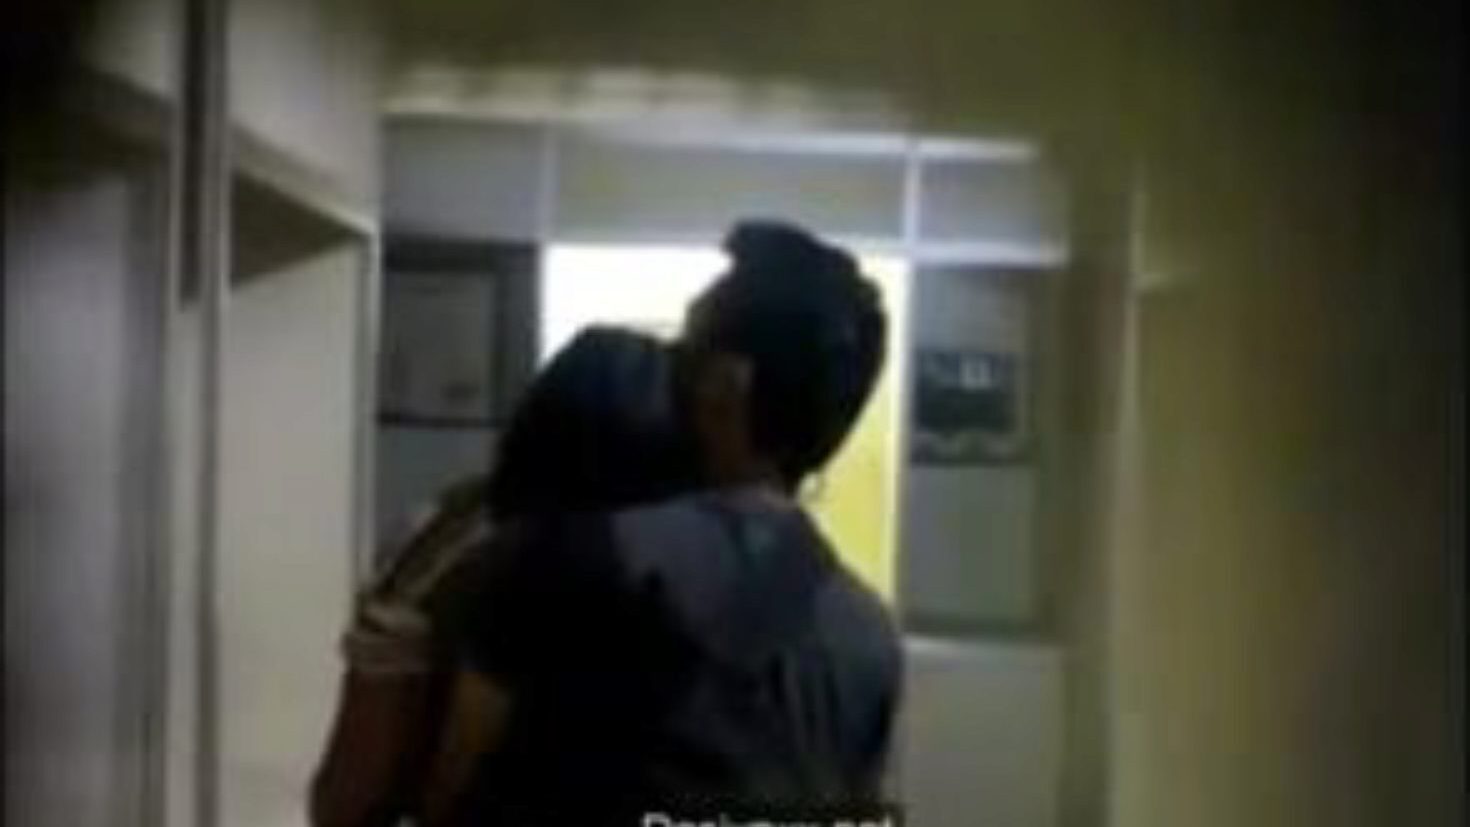 iubitorii de facultate sărutându-se în camera de depozitare, porno 7a: xhamster urmărește iubitorii de colegiu sărutându-se în camera de depozitare film pe xhamster, cea mai bună resursă web cu fucky-fucky tube cu tone de bărbați indieni gratuite sărutând și scene de filme porno xxx de colegiu